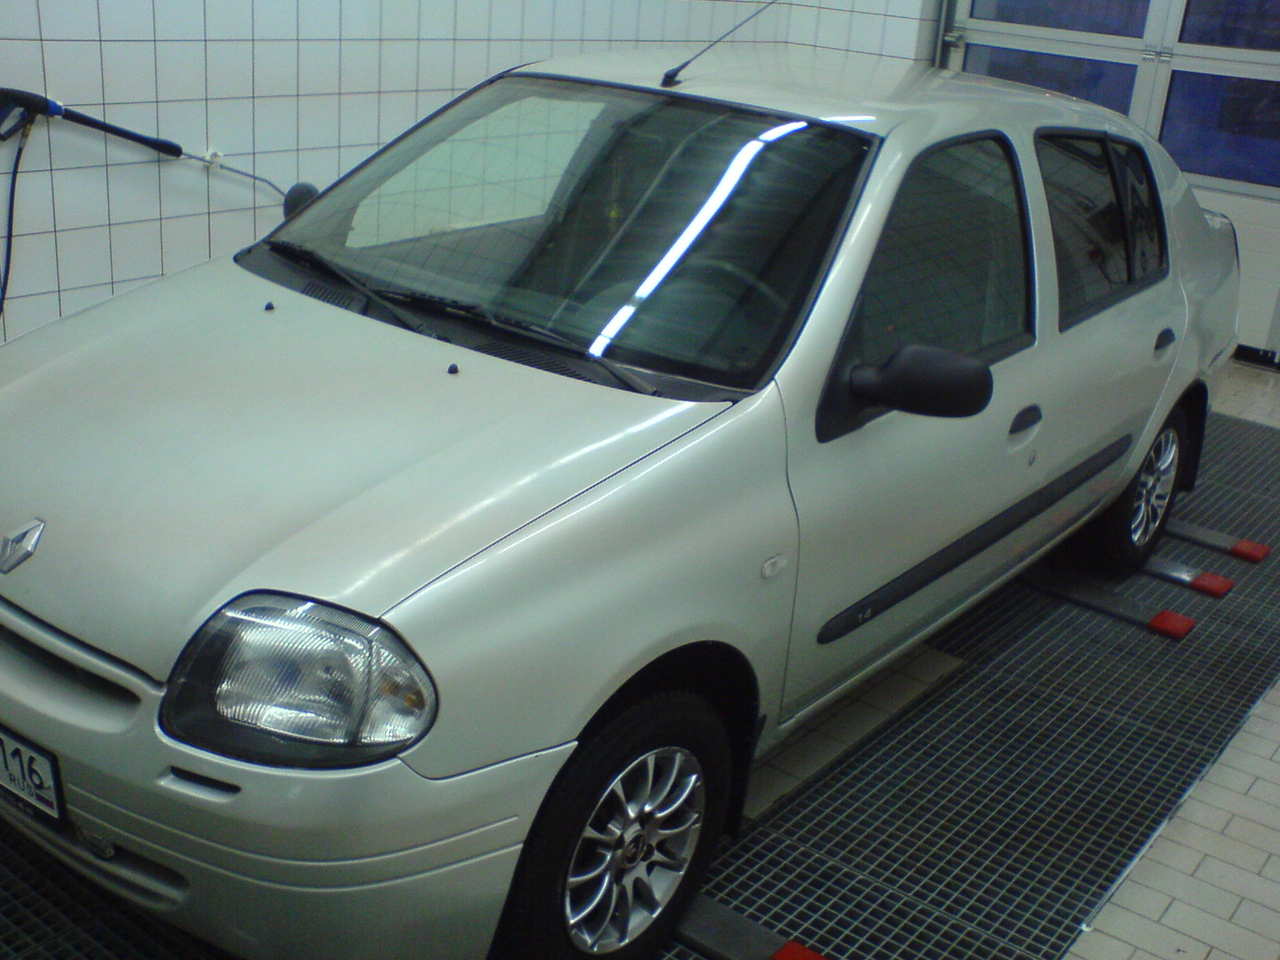 2001 Renault Symbol specs, Engine size 1.4l., Fuel type Gasoline, Drive